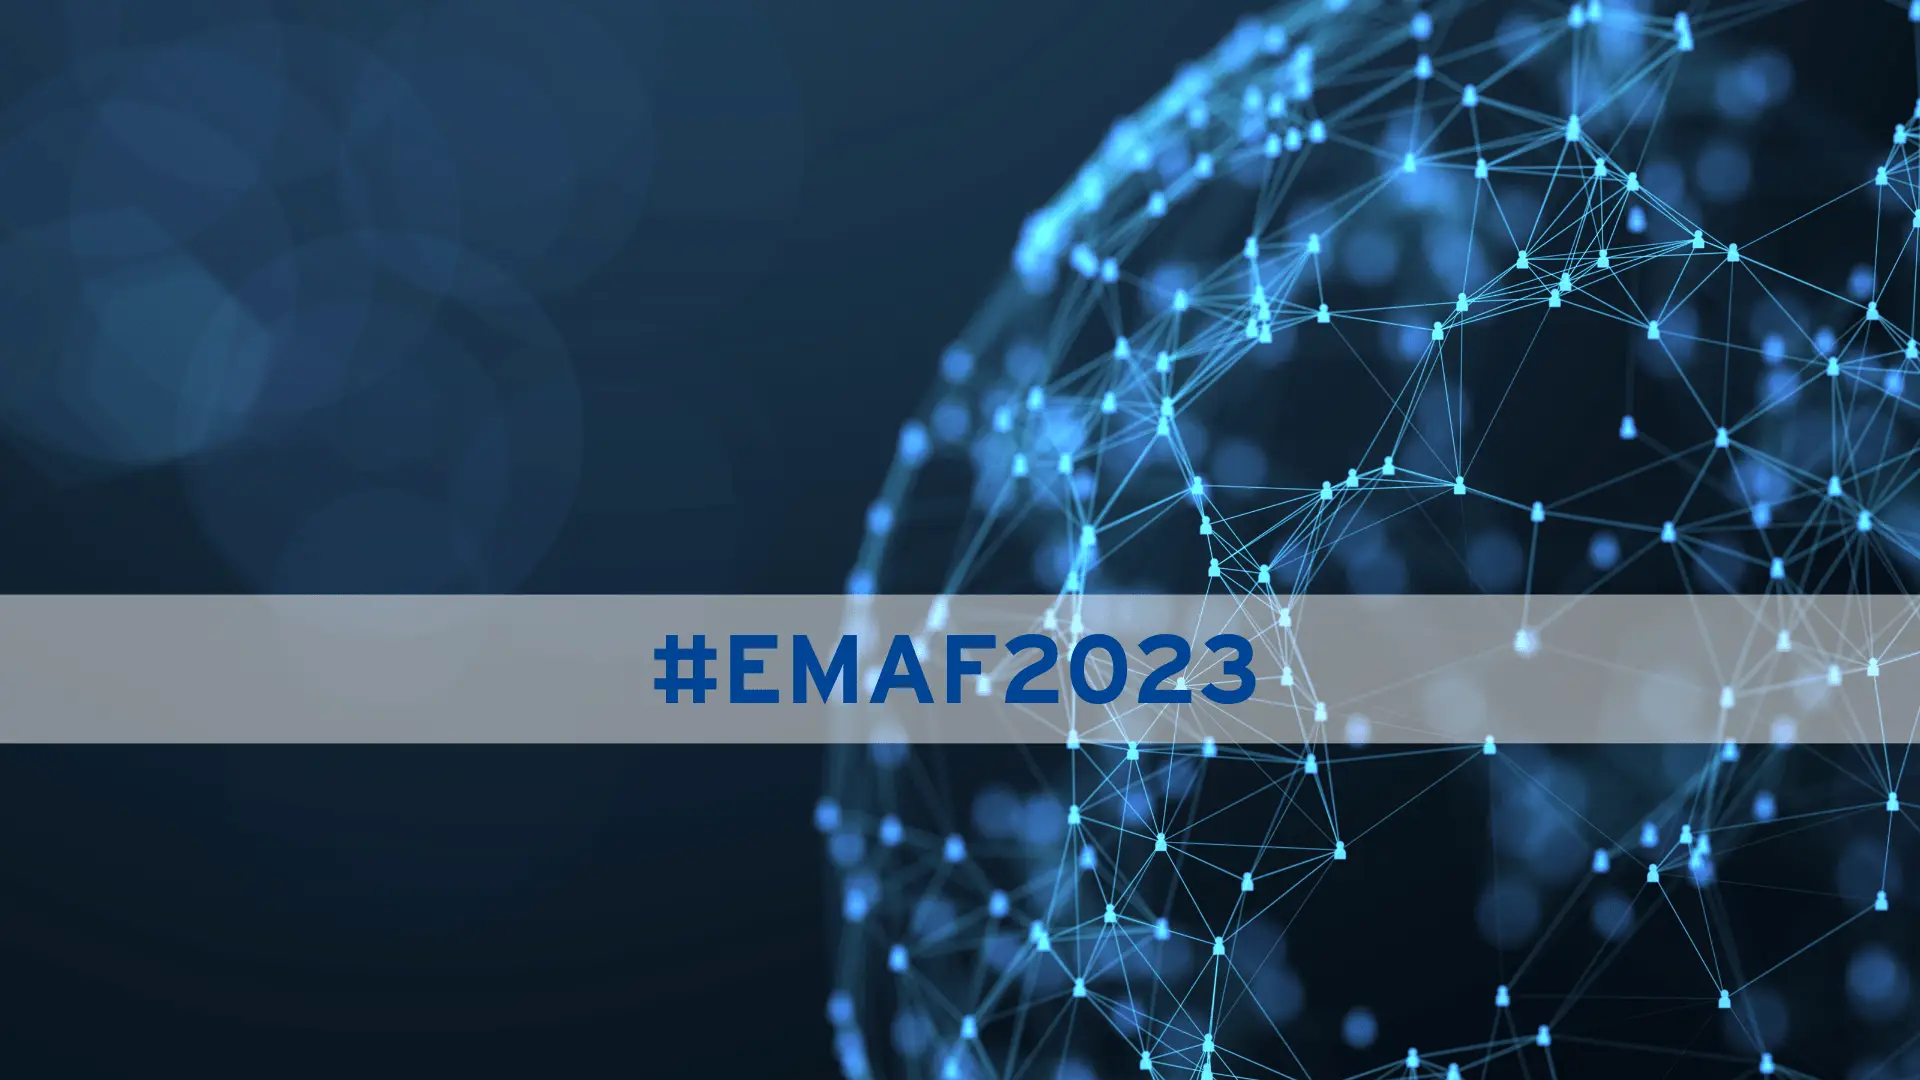 Emaf 2023